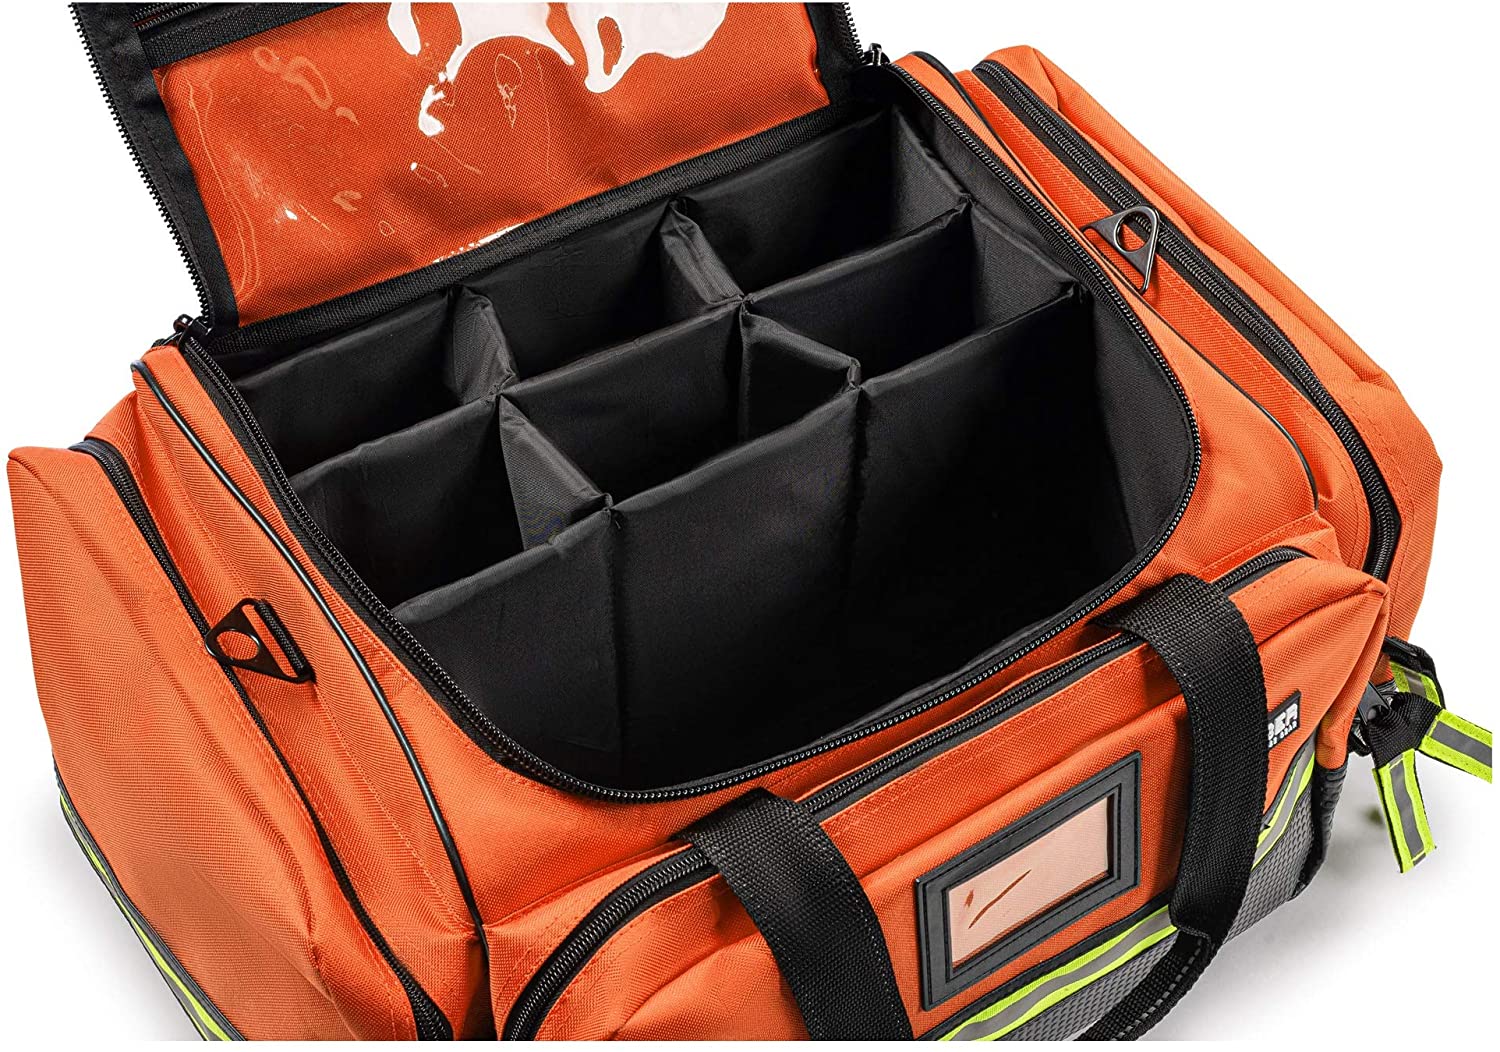 Scherber First Responder Bag | Professional Advanced EMT/EMS Trauma Bag